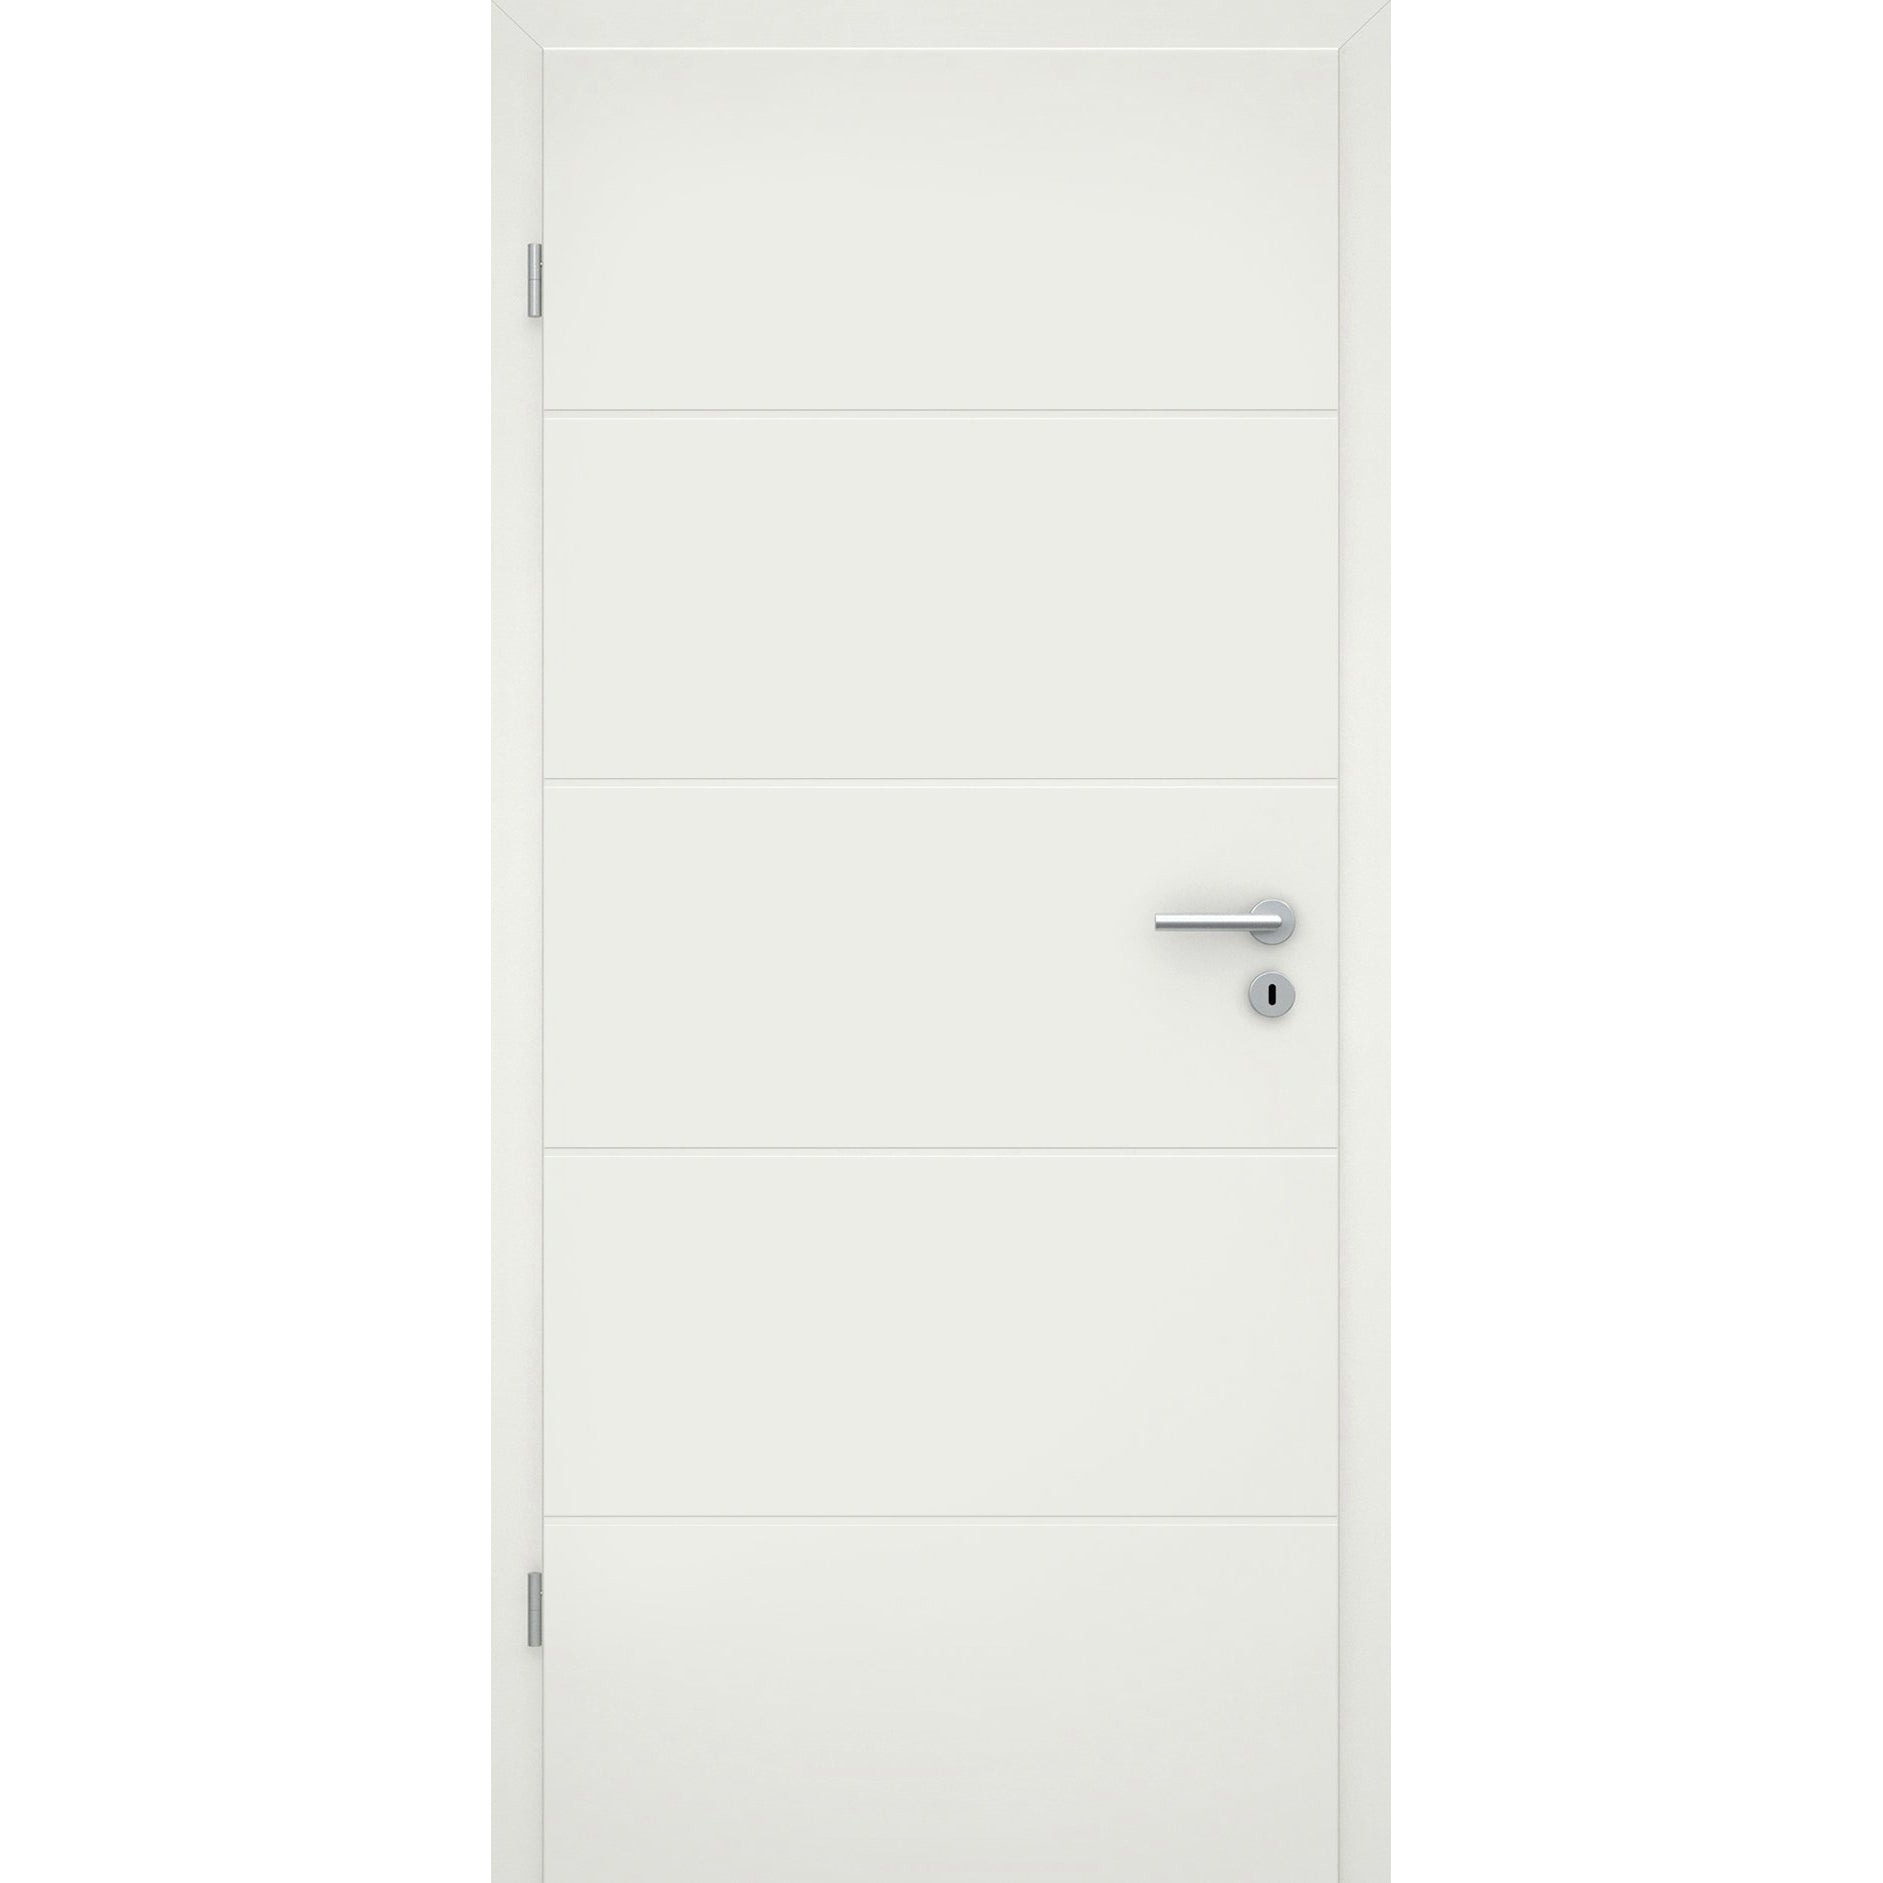 Wohnungseingangstür soft-weiß 4 Rillen Eckkante SK1 / KK3 - Modell Designtür Q41